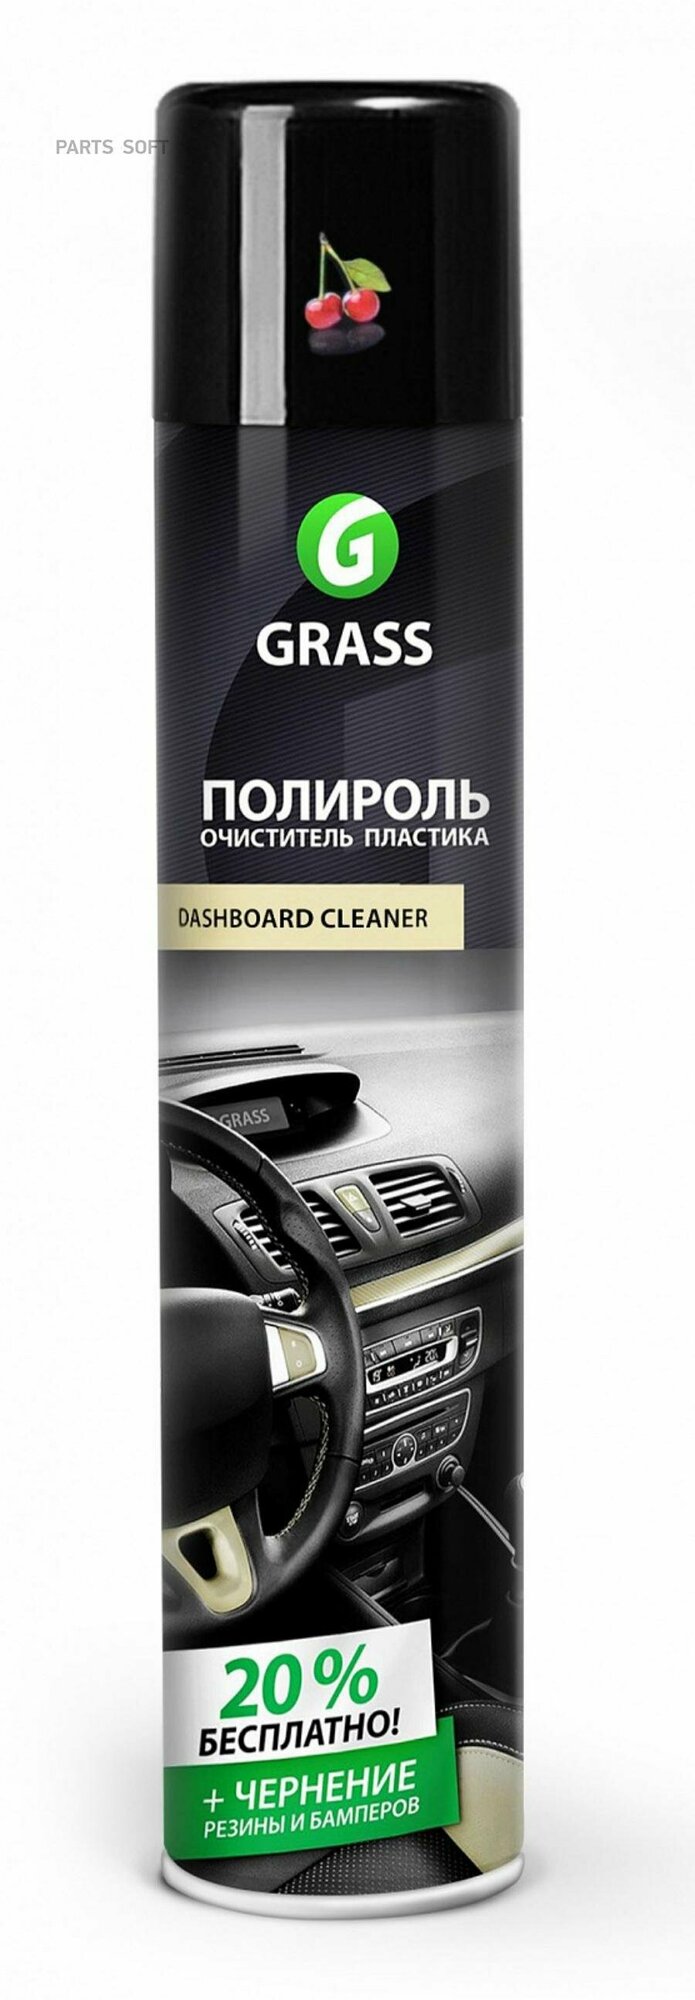 GRASS 120107-2 Полироль-Очиститель пластика GRASS Dashboard Cleaner Вишня (0,75л)